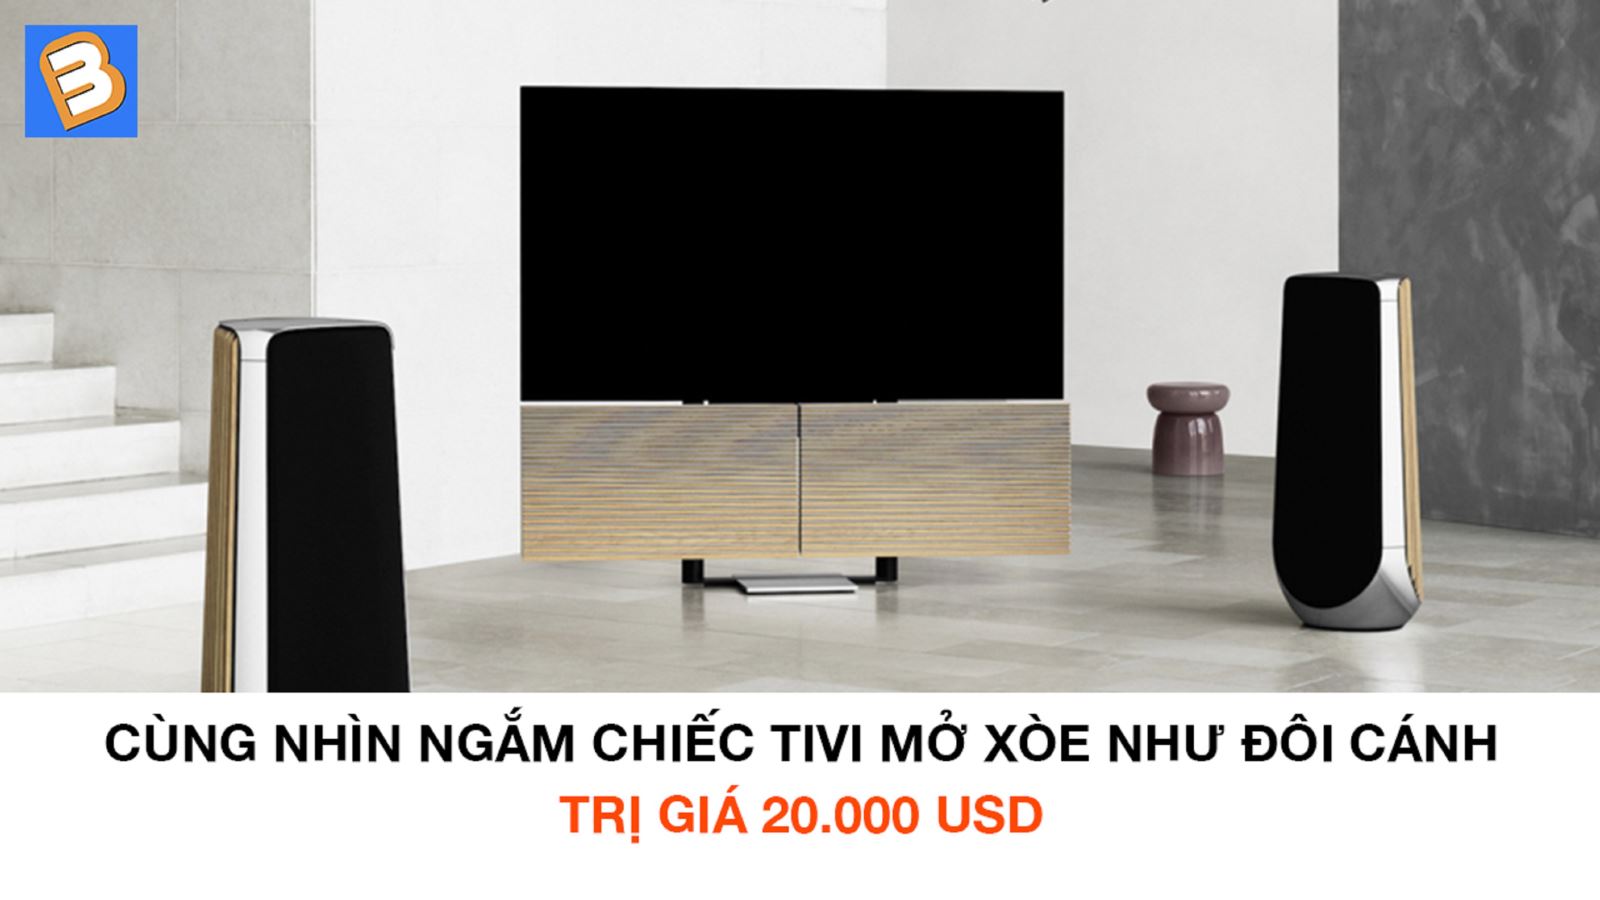 Cùng nhìn ngắm chiếc tivi mở xòe như đôi cánh trị giá 20.000 USD